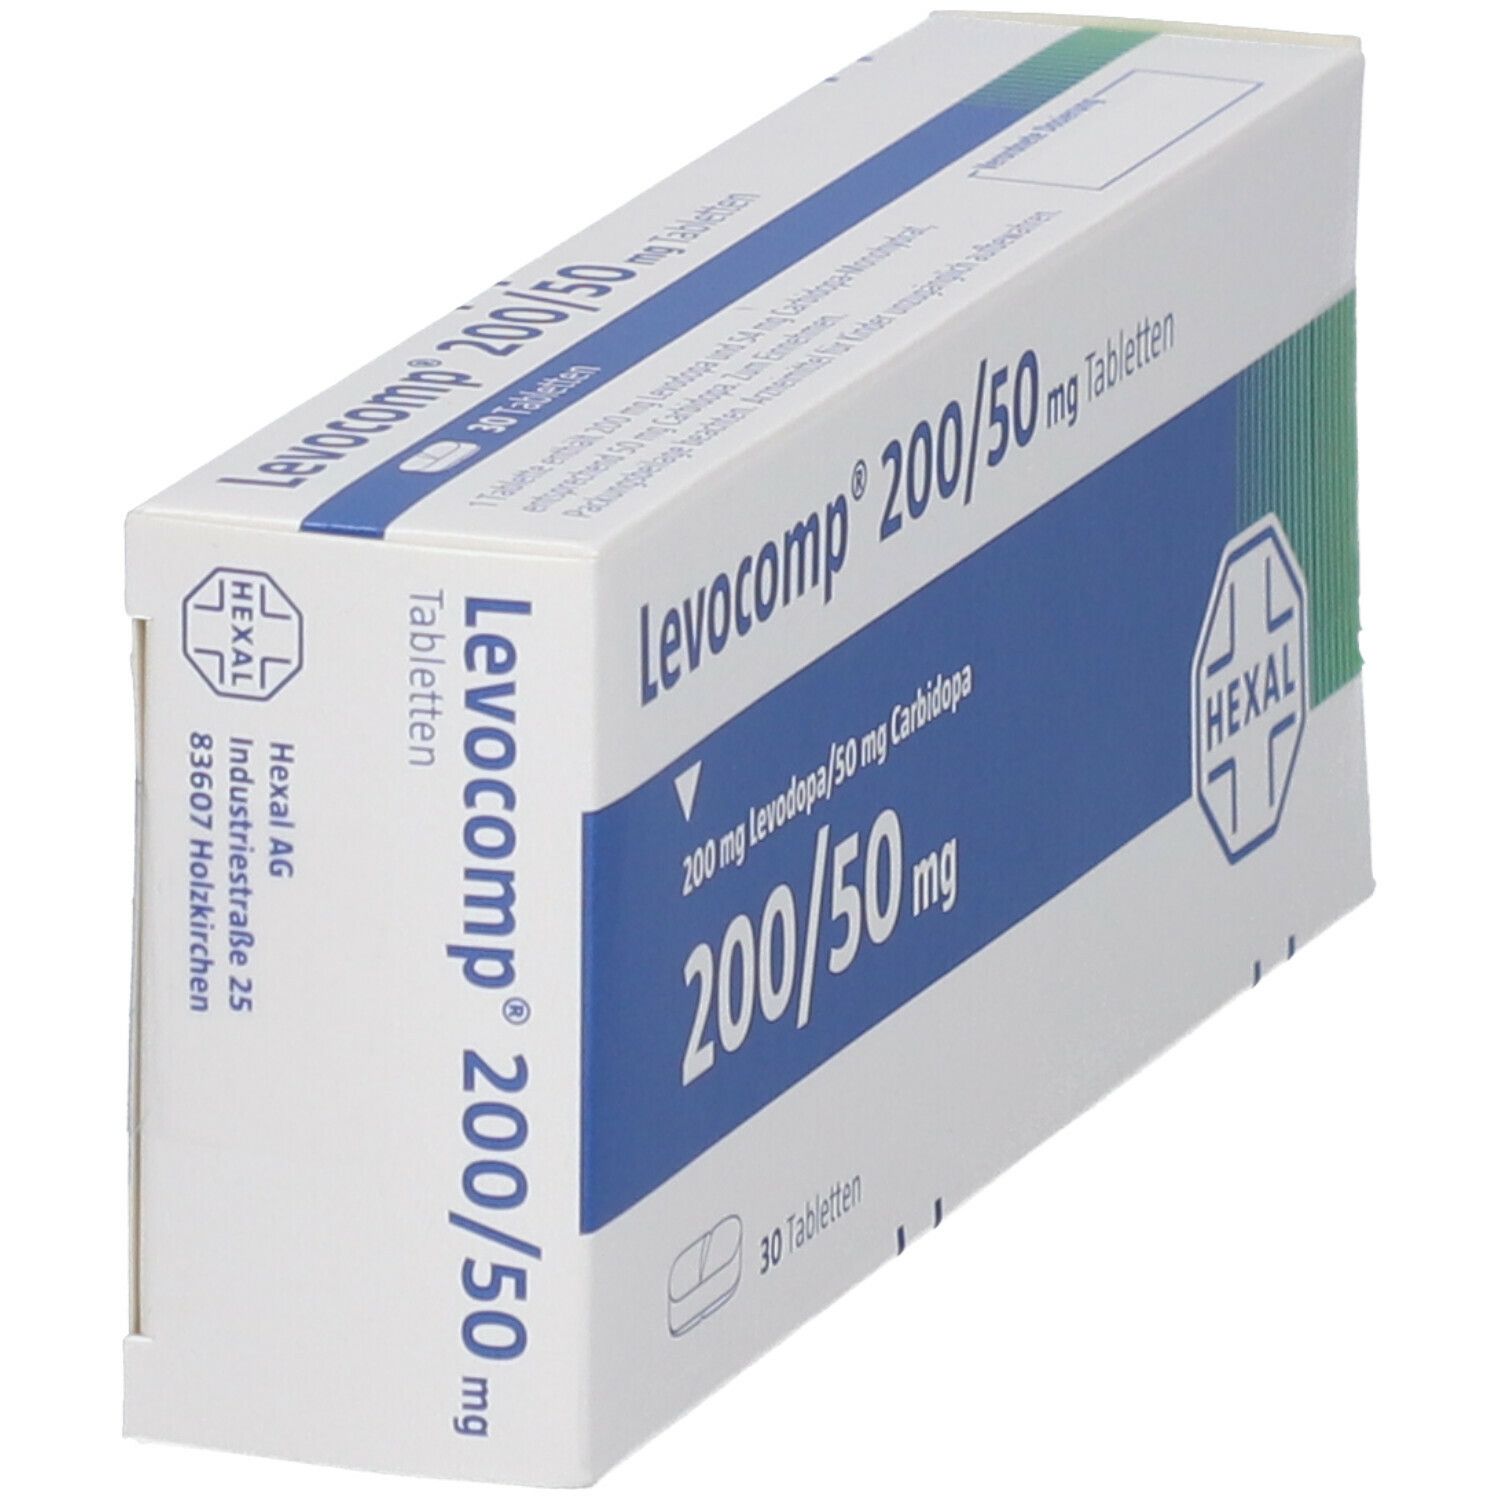 Levocomp® 200 mg/50 mg